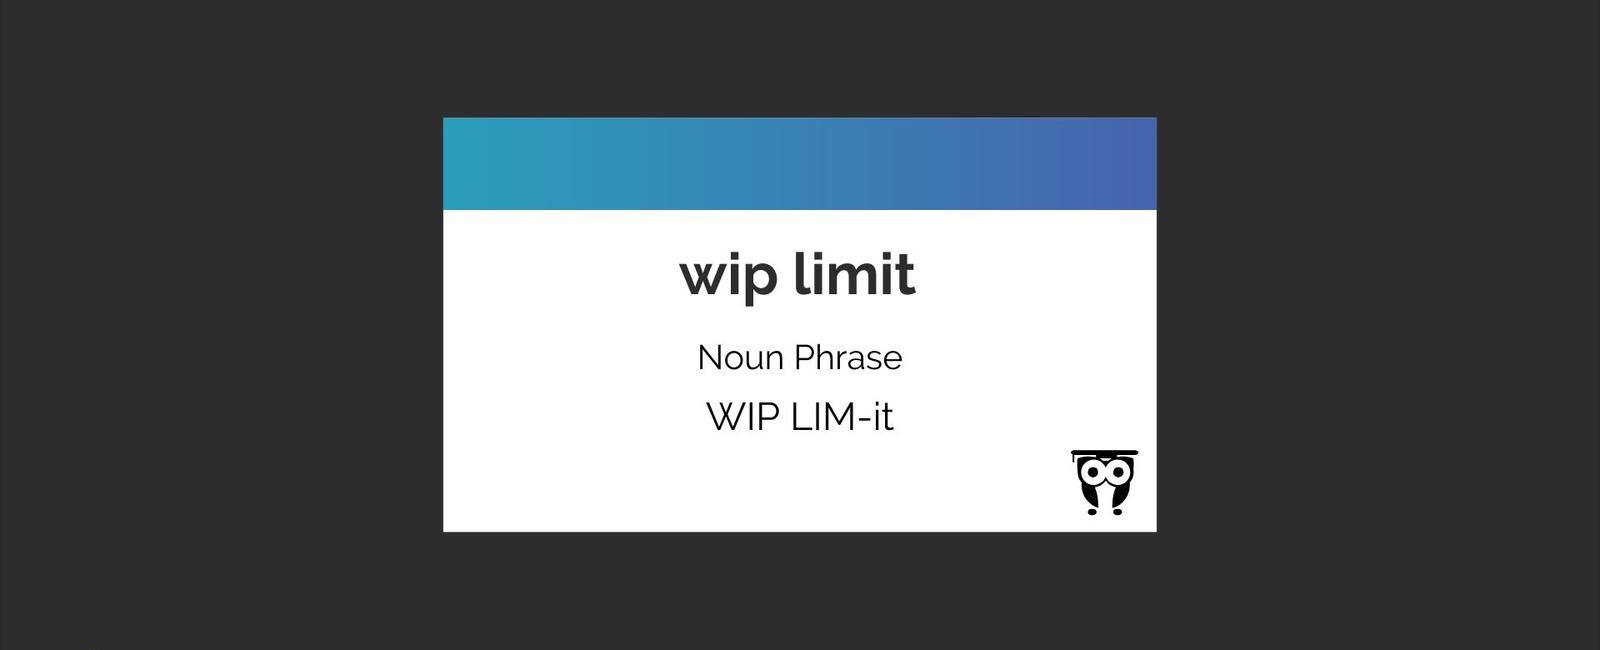 WIP Limit